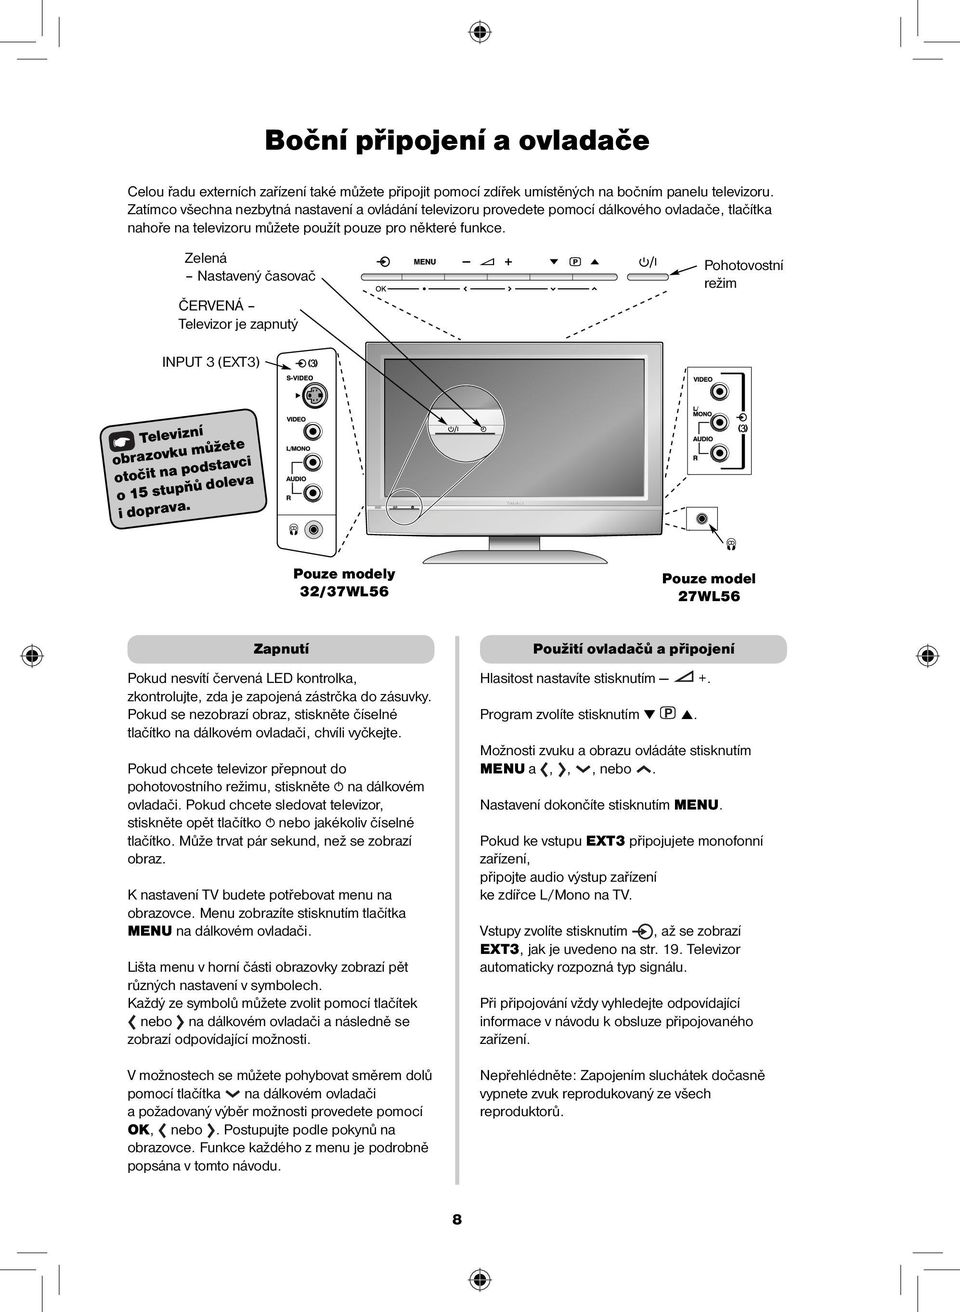 Zelená Nstvený čsovč ČERVENÁ Televizor je zpnutý Pohotovostní režim INPUT 3 (EXT3) Televizní orzovku můžete otočit n podstvci o 15 stupňů dolev i doprv.